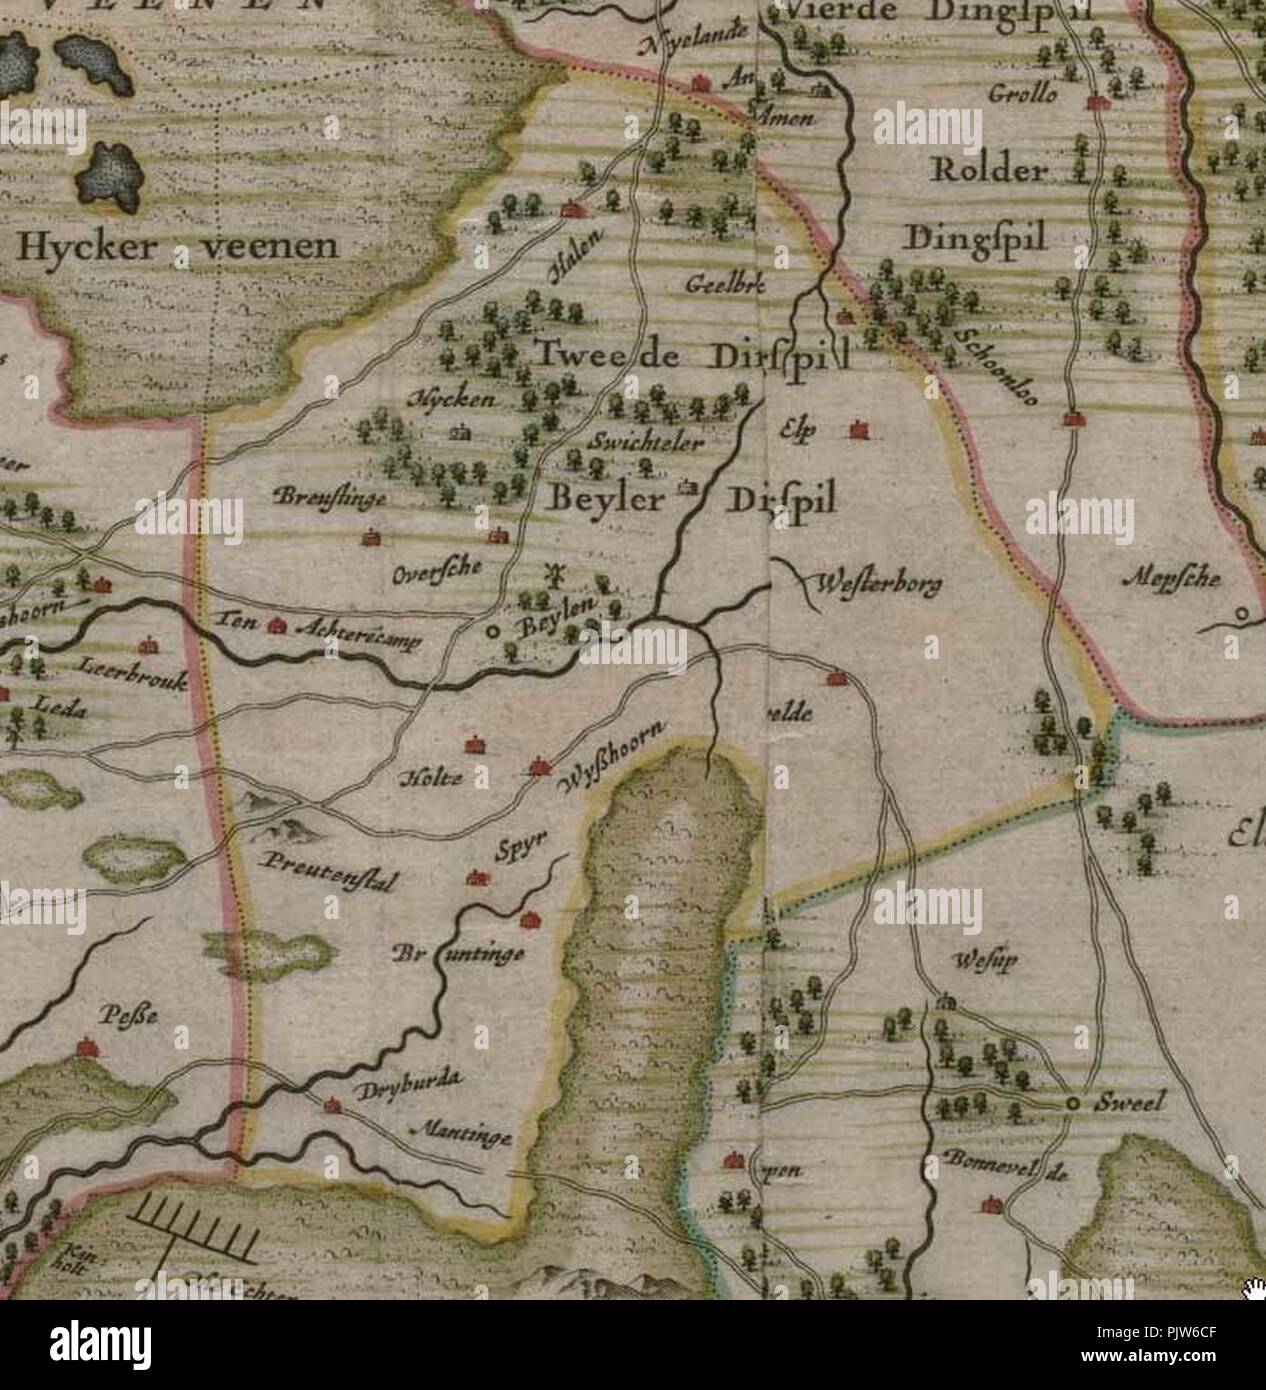 Beilerdingspel op kaart van Drenthe door Cornelis Pijnacker. Stock Photo